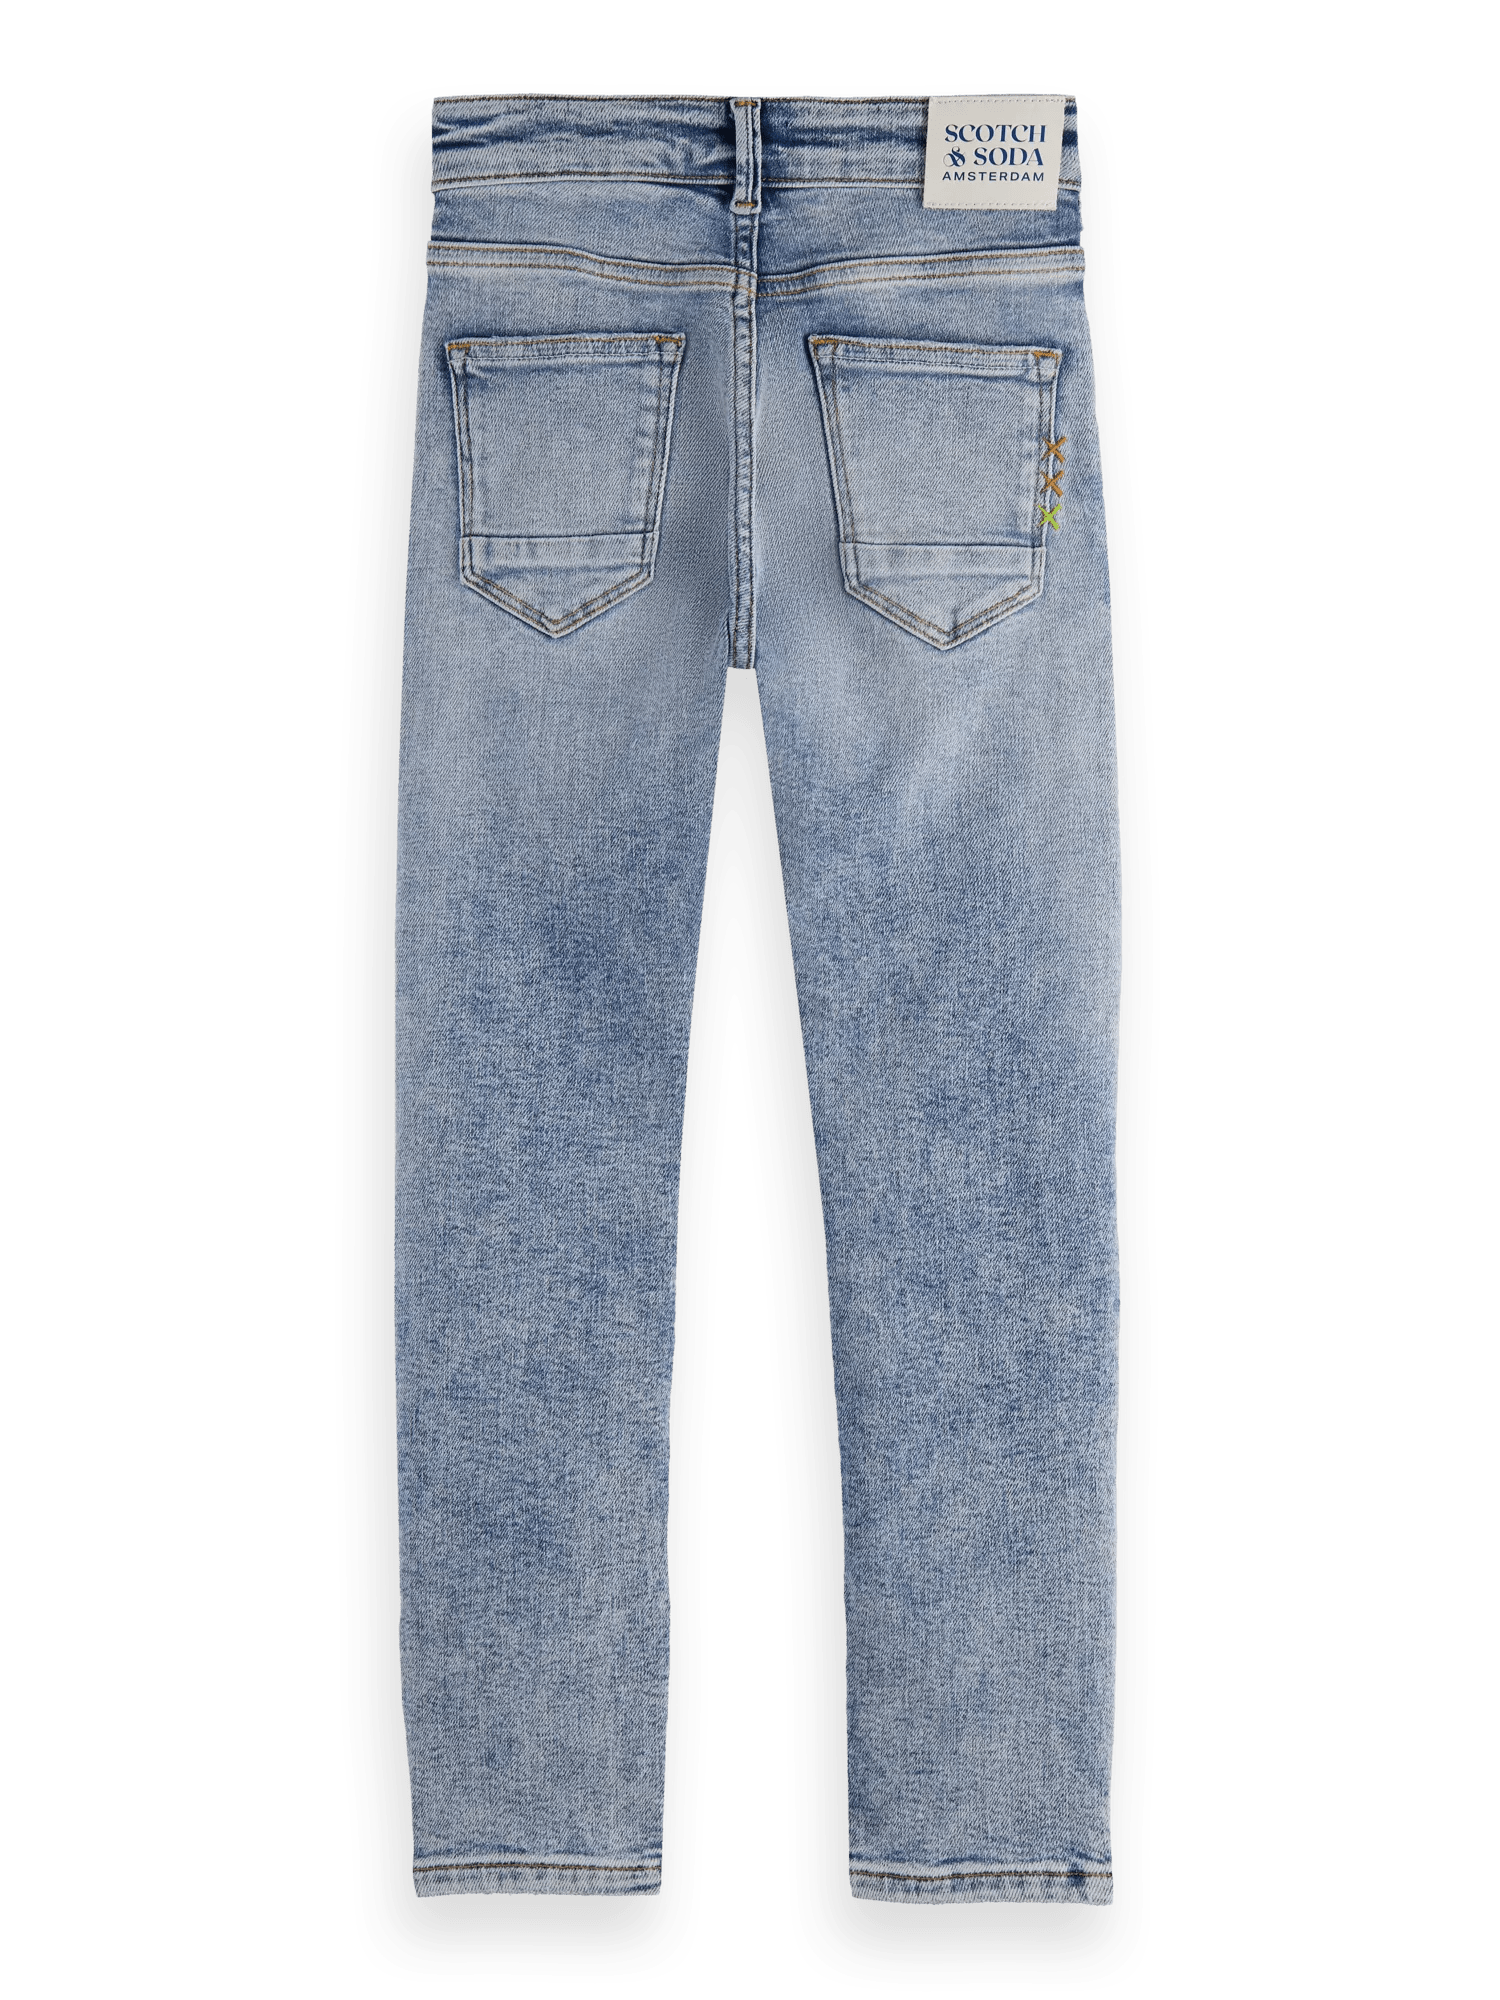 Scotch & Soda Strummer slim fit jeans — Daylight BCK